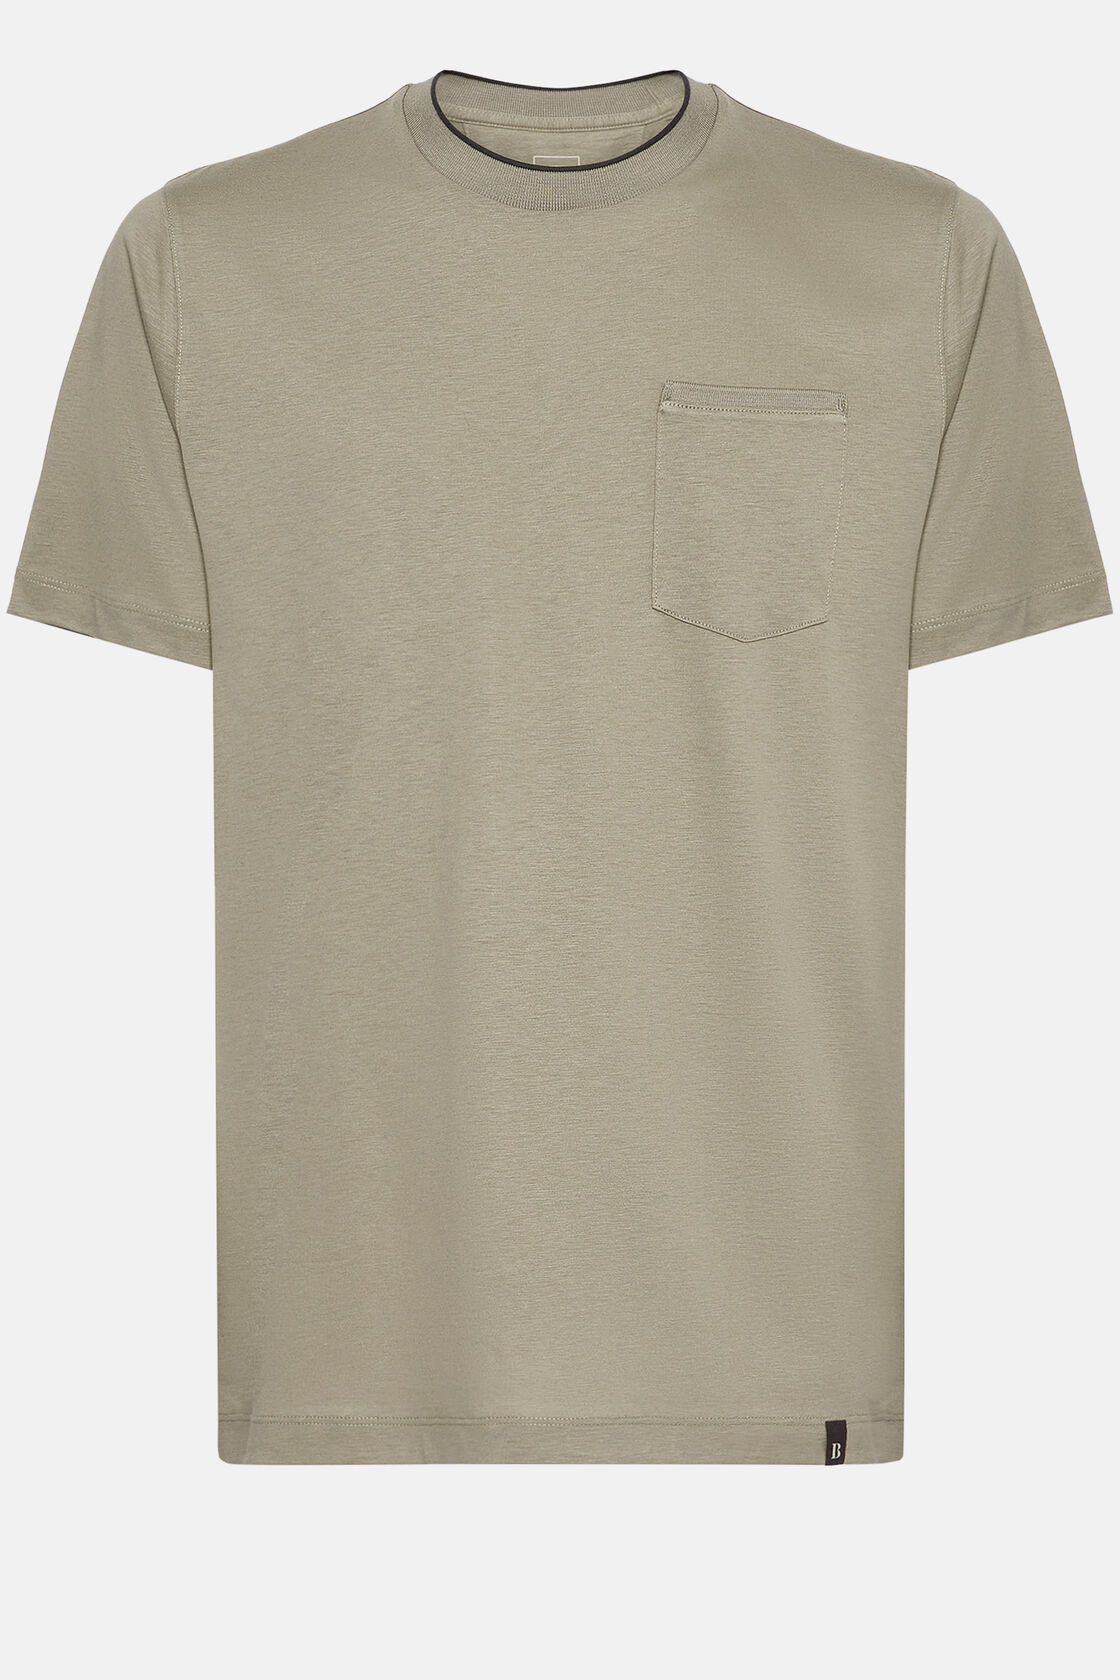 T-shirt em malha de algodão e tencel, Taupe, hi-res